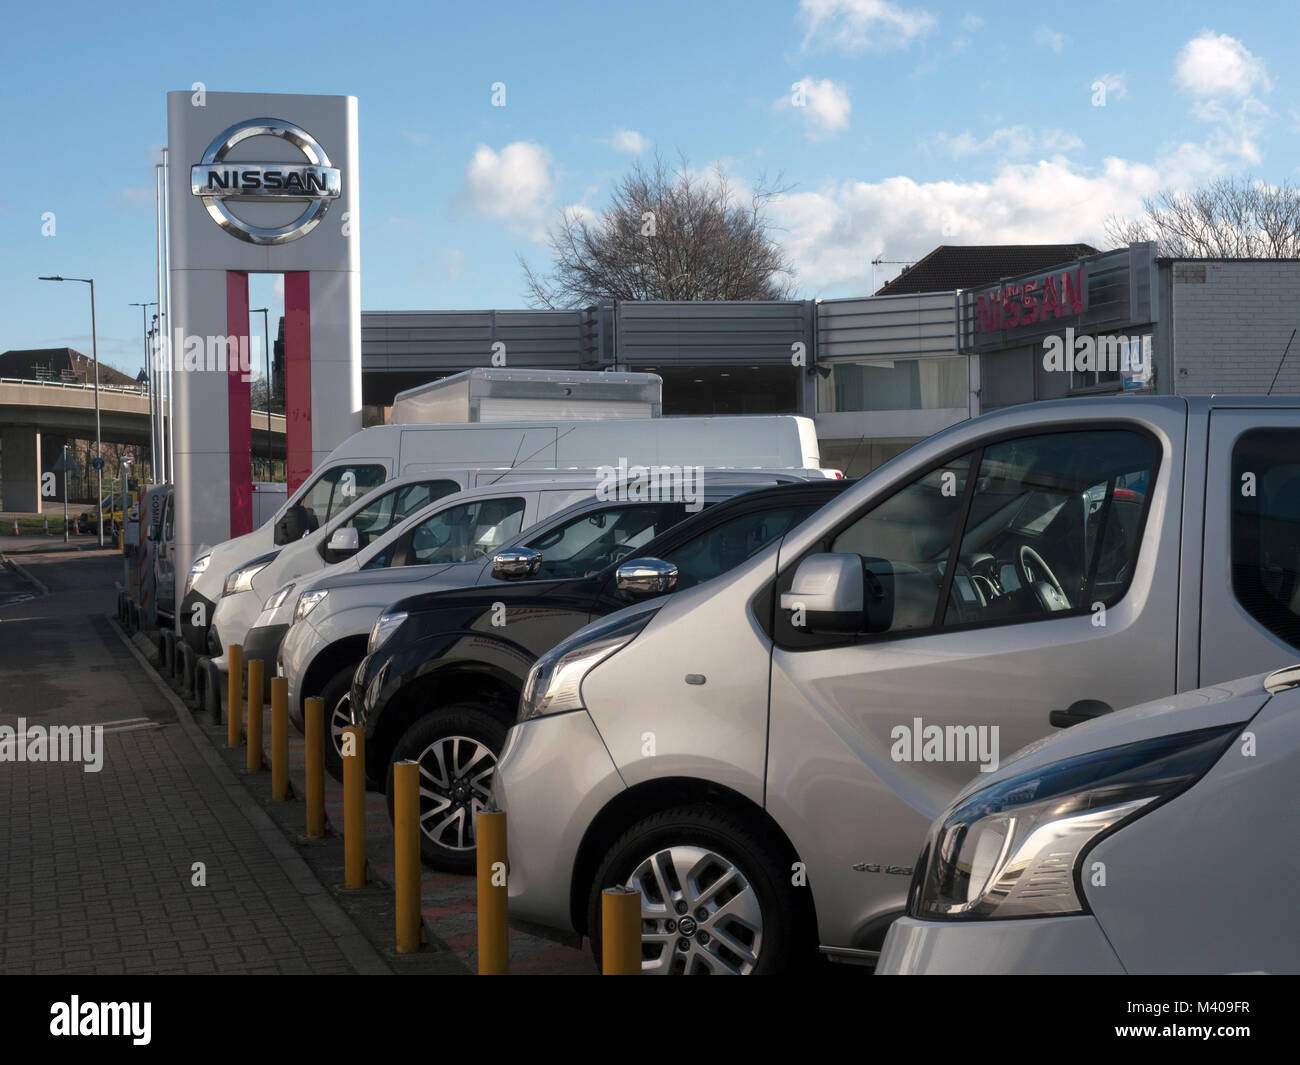 Vente voiture Nissan concessionnaire principal d'exposition et d'avant-cour, Redbridge, Southampton, Hampshire, England, UK Banque D'Images